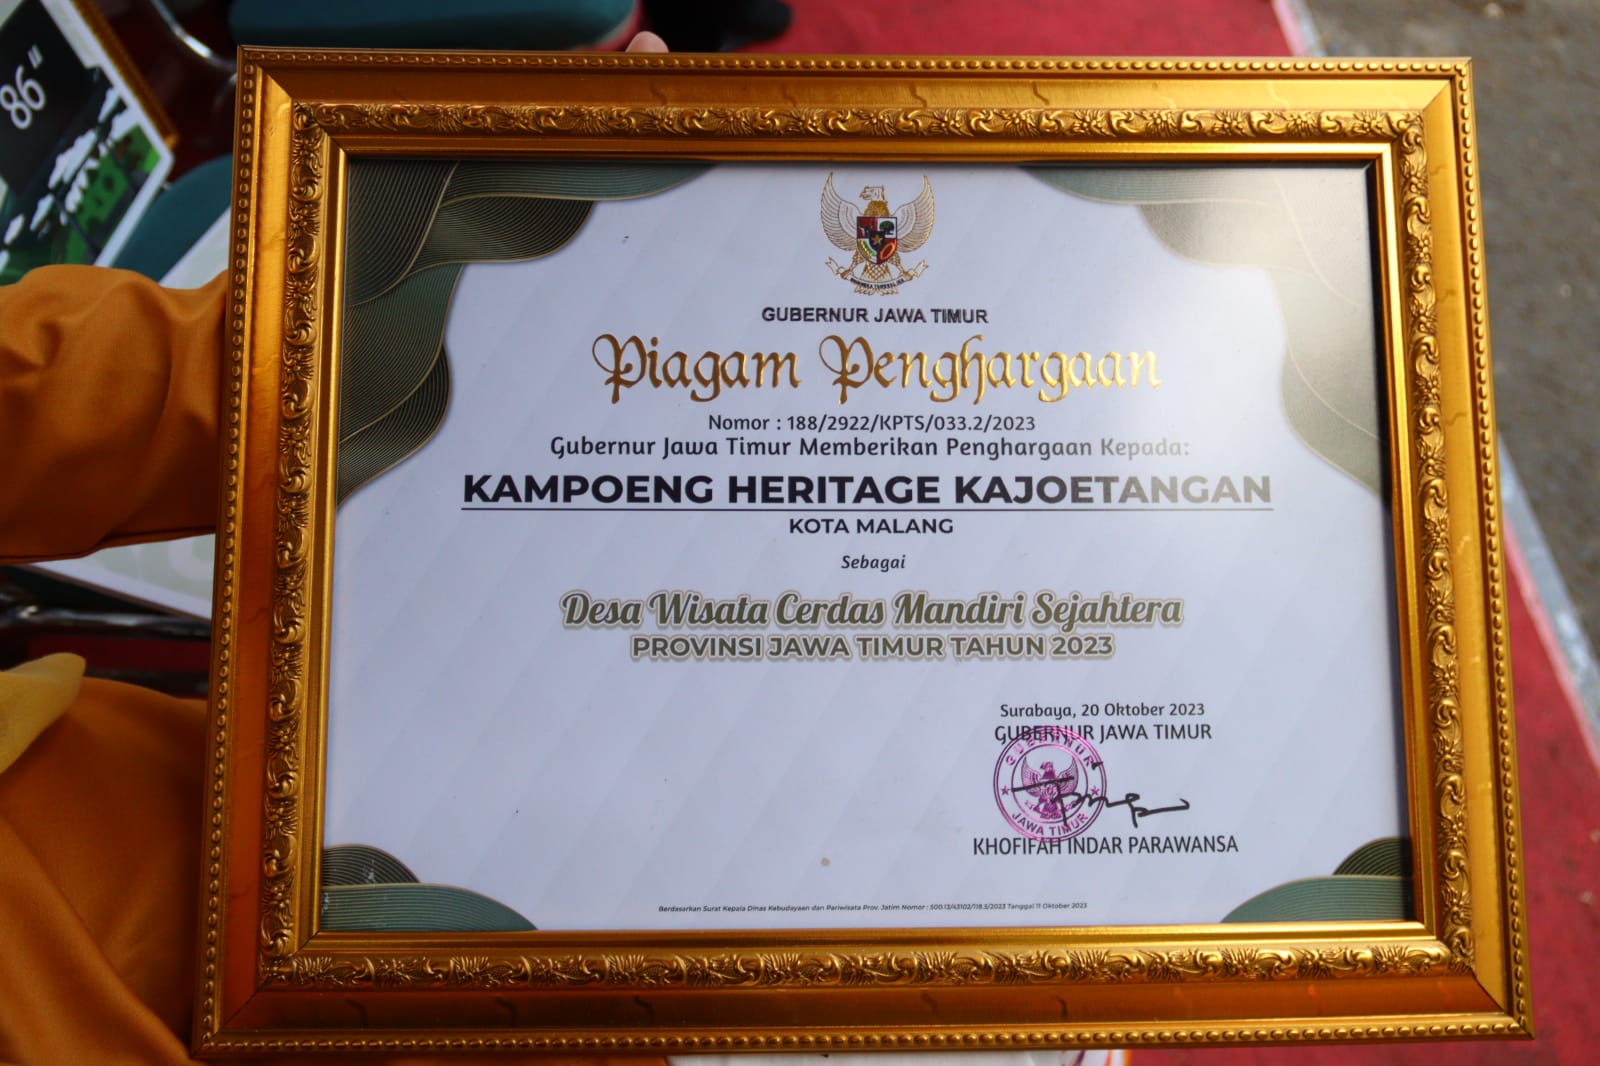 Piagam penghargaan untuk Kampoeng Heritage Kajoetangan. 